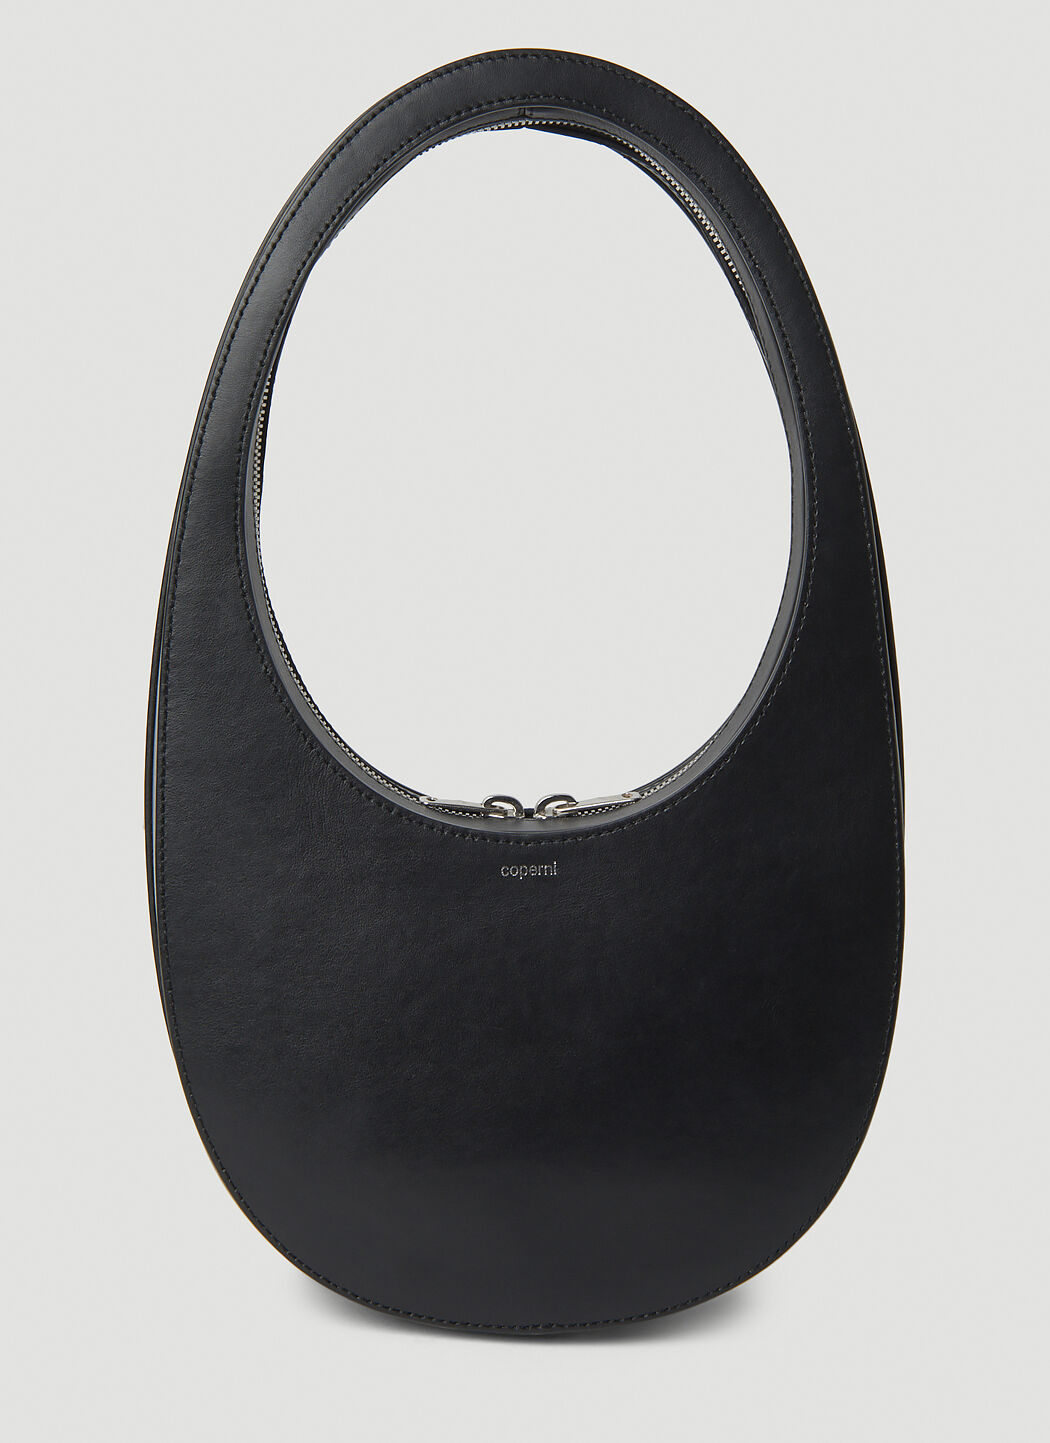 Coperni Swipe Handbag Black cpn0253004